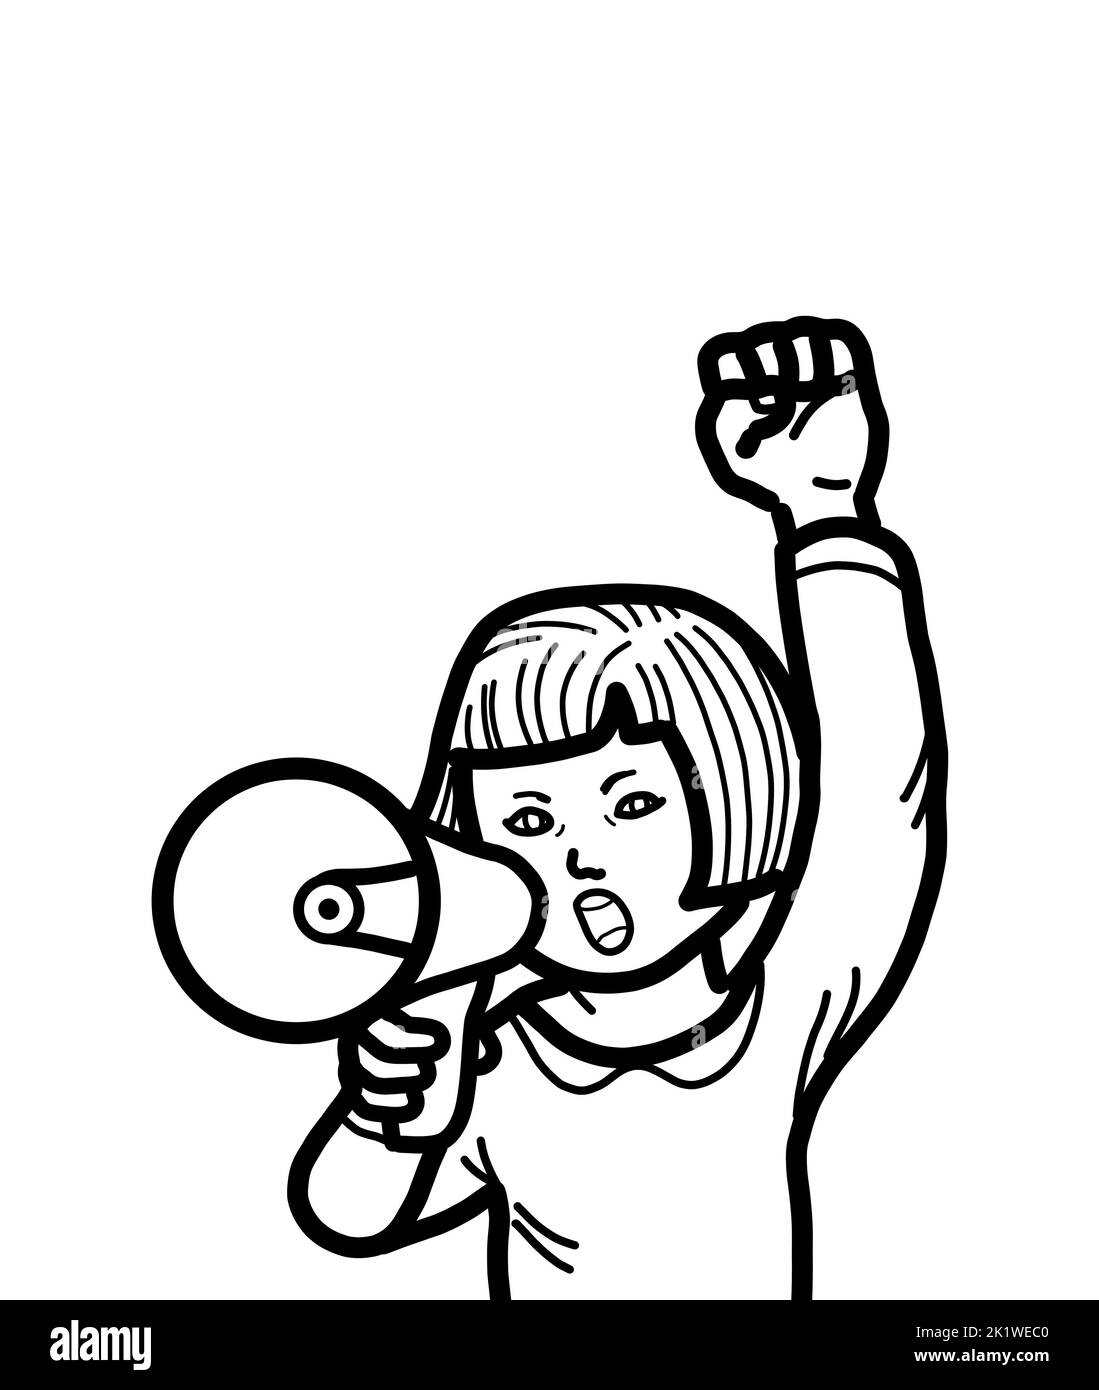 Eine junge weibliche Person Hand hält Megaphon schreiend und hob Arm Faust. Das Protestdemonstrationskonzept des studentischen Aktivisten. Stockfoto